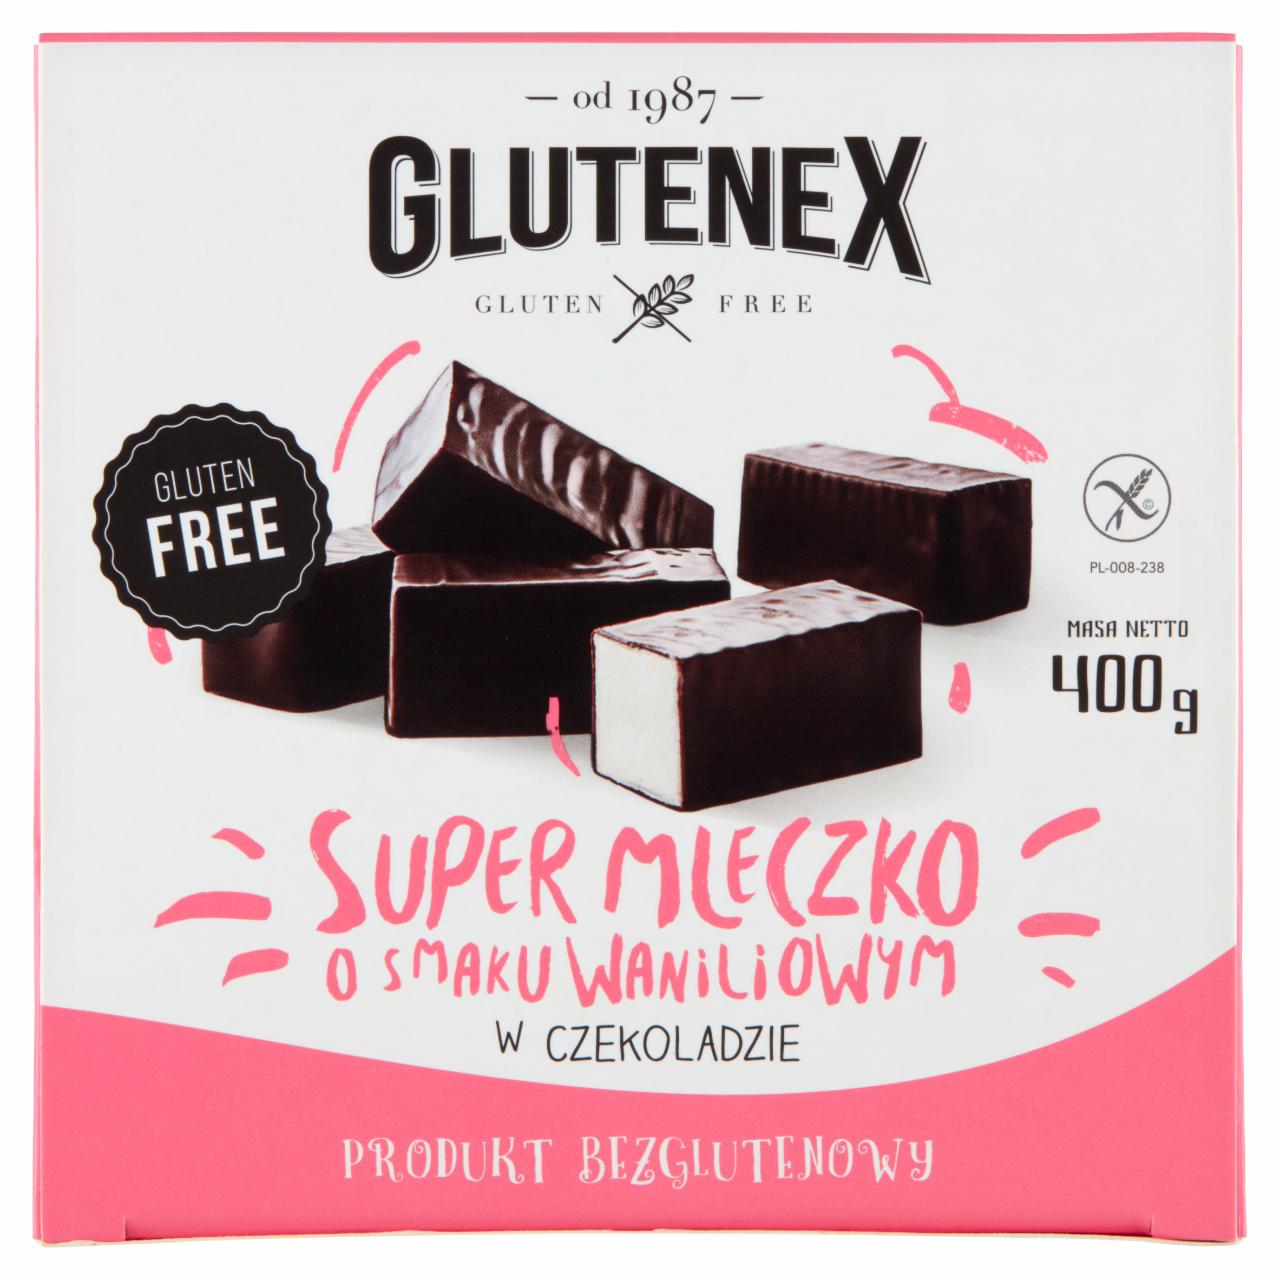 Zdjęcia - Glutenex Super mleczko o smaku waniliowym w czekoladzie 400 g